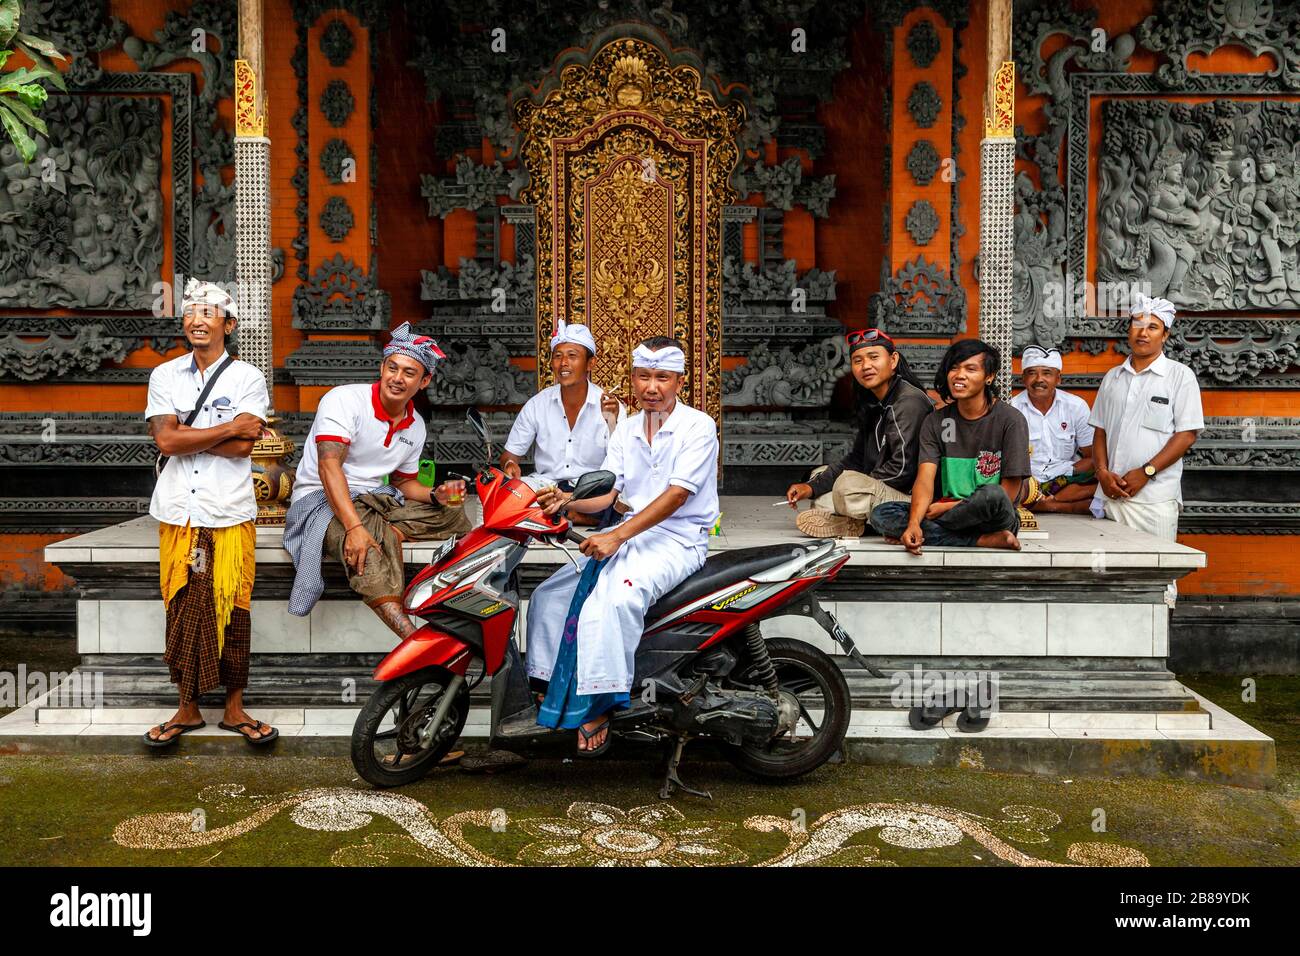 Eine Gruppe balinesischer Hindu-Männer außerhalb EINES Tempels, Kintamani-Gebiet, Bali, Indonesien. Stockfoto